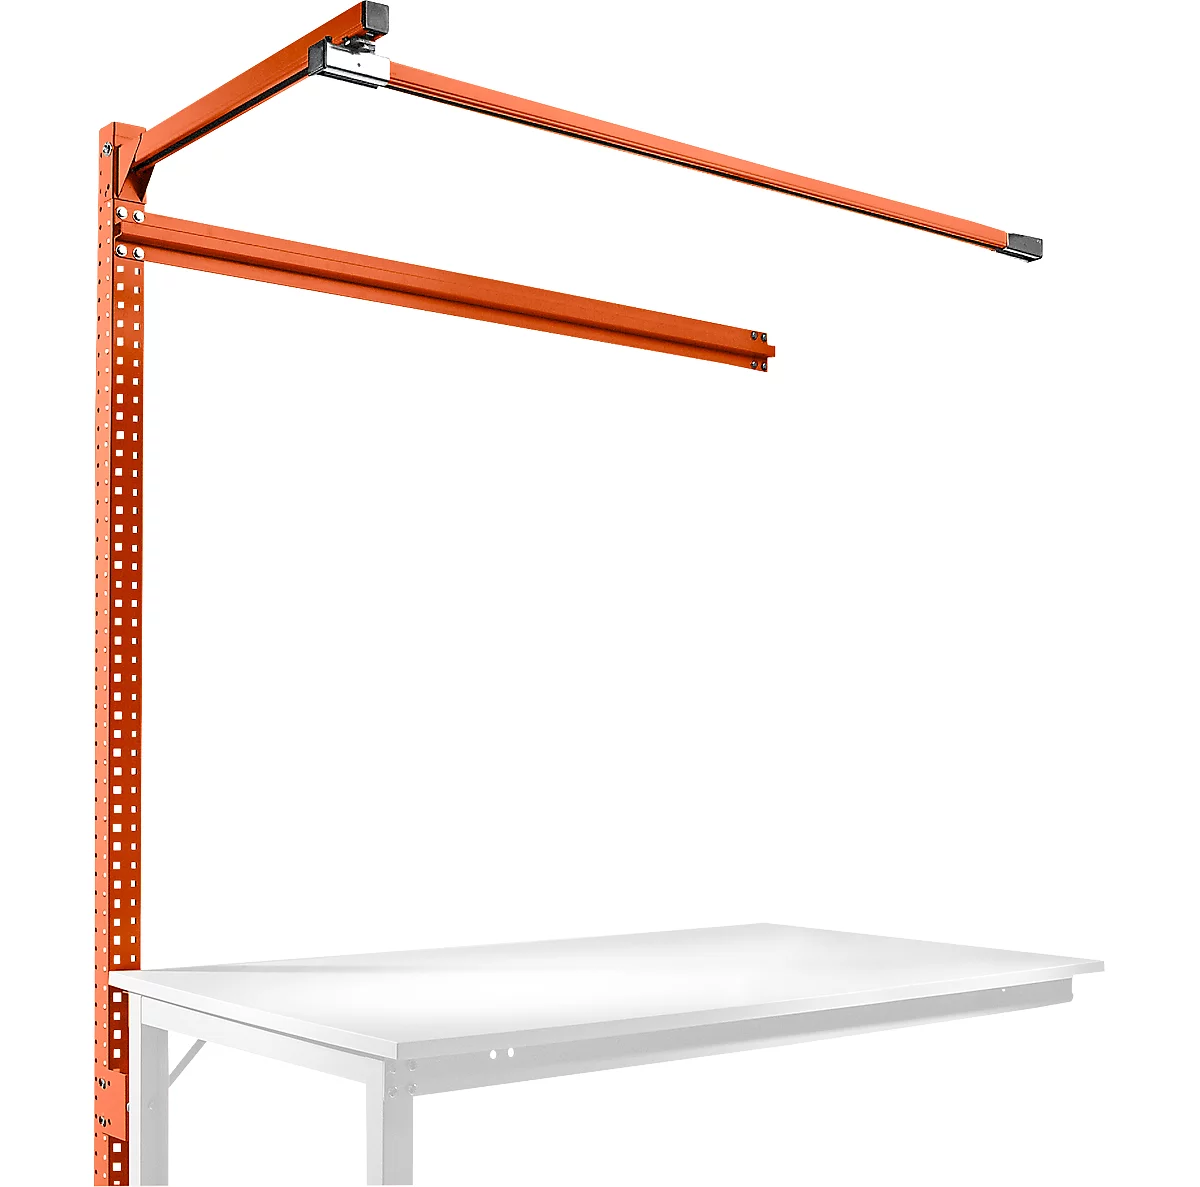 Estructura pórtica adicional con brazo saliente, Mesa de extensión SPEZIAL mesa de trabajo/banco de trabajo UNIVERSAL/PROFI, 1500 mm, rojo anaranjado